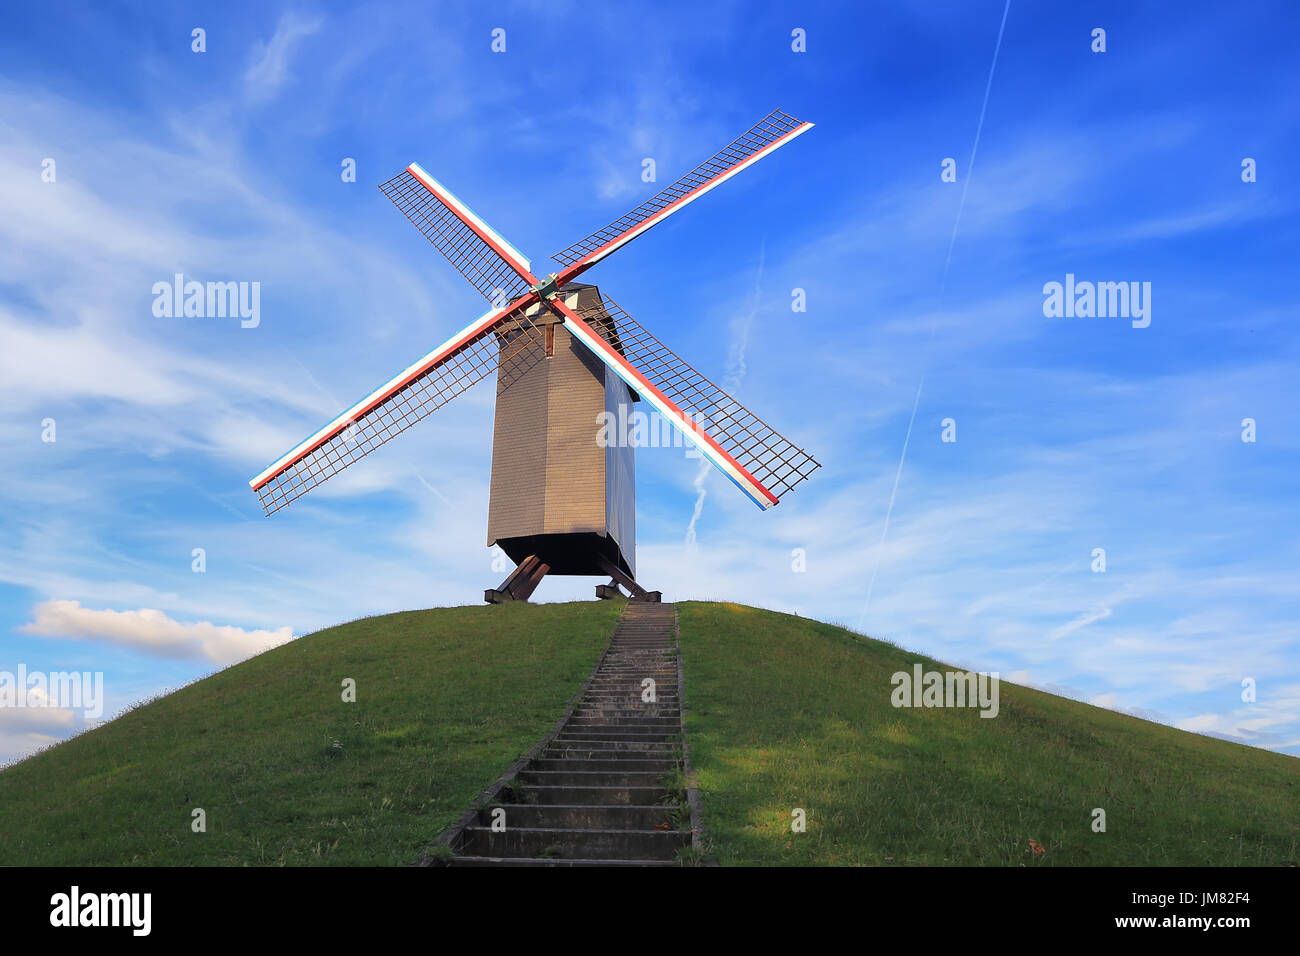 Windmühle auf grünem Hügel an einem sonnigen Tag. Retro-Windmühle auf blauen Himmelshintergrund. Wahrzeichen von Brügge. Stockfoto